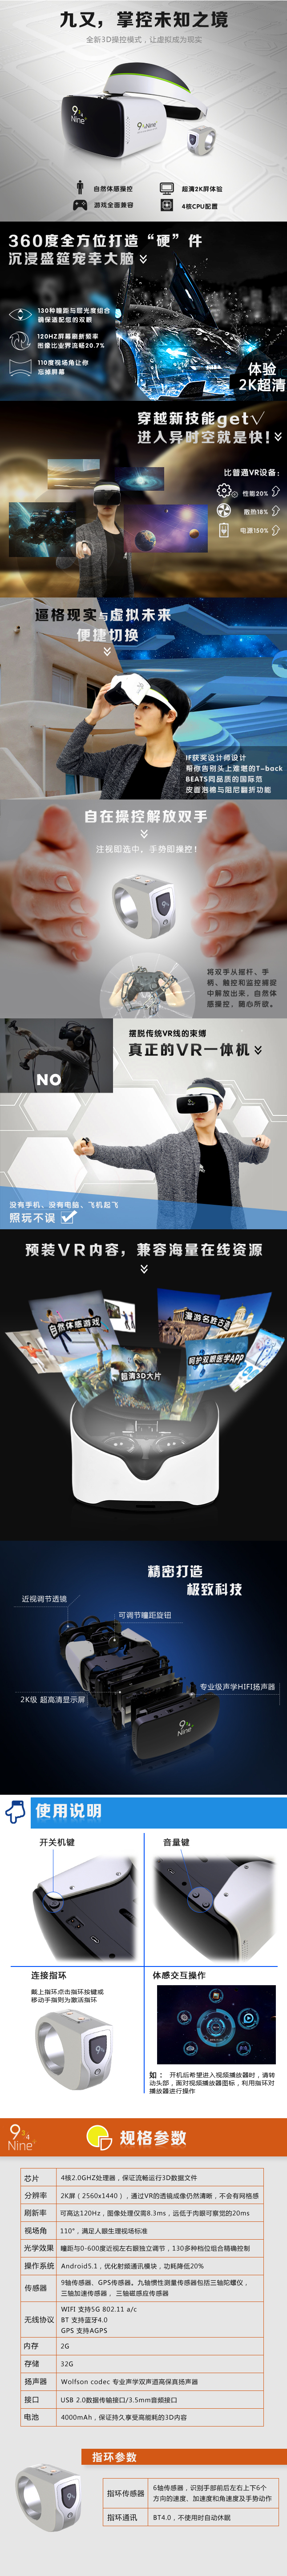 九又VR虚拟现实一体机- 京东众筹.png